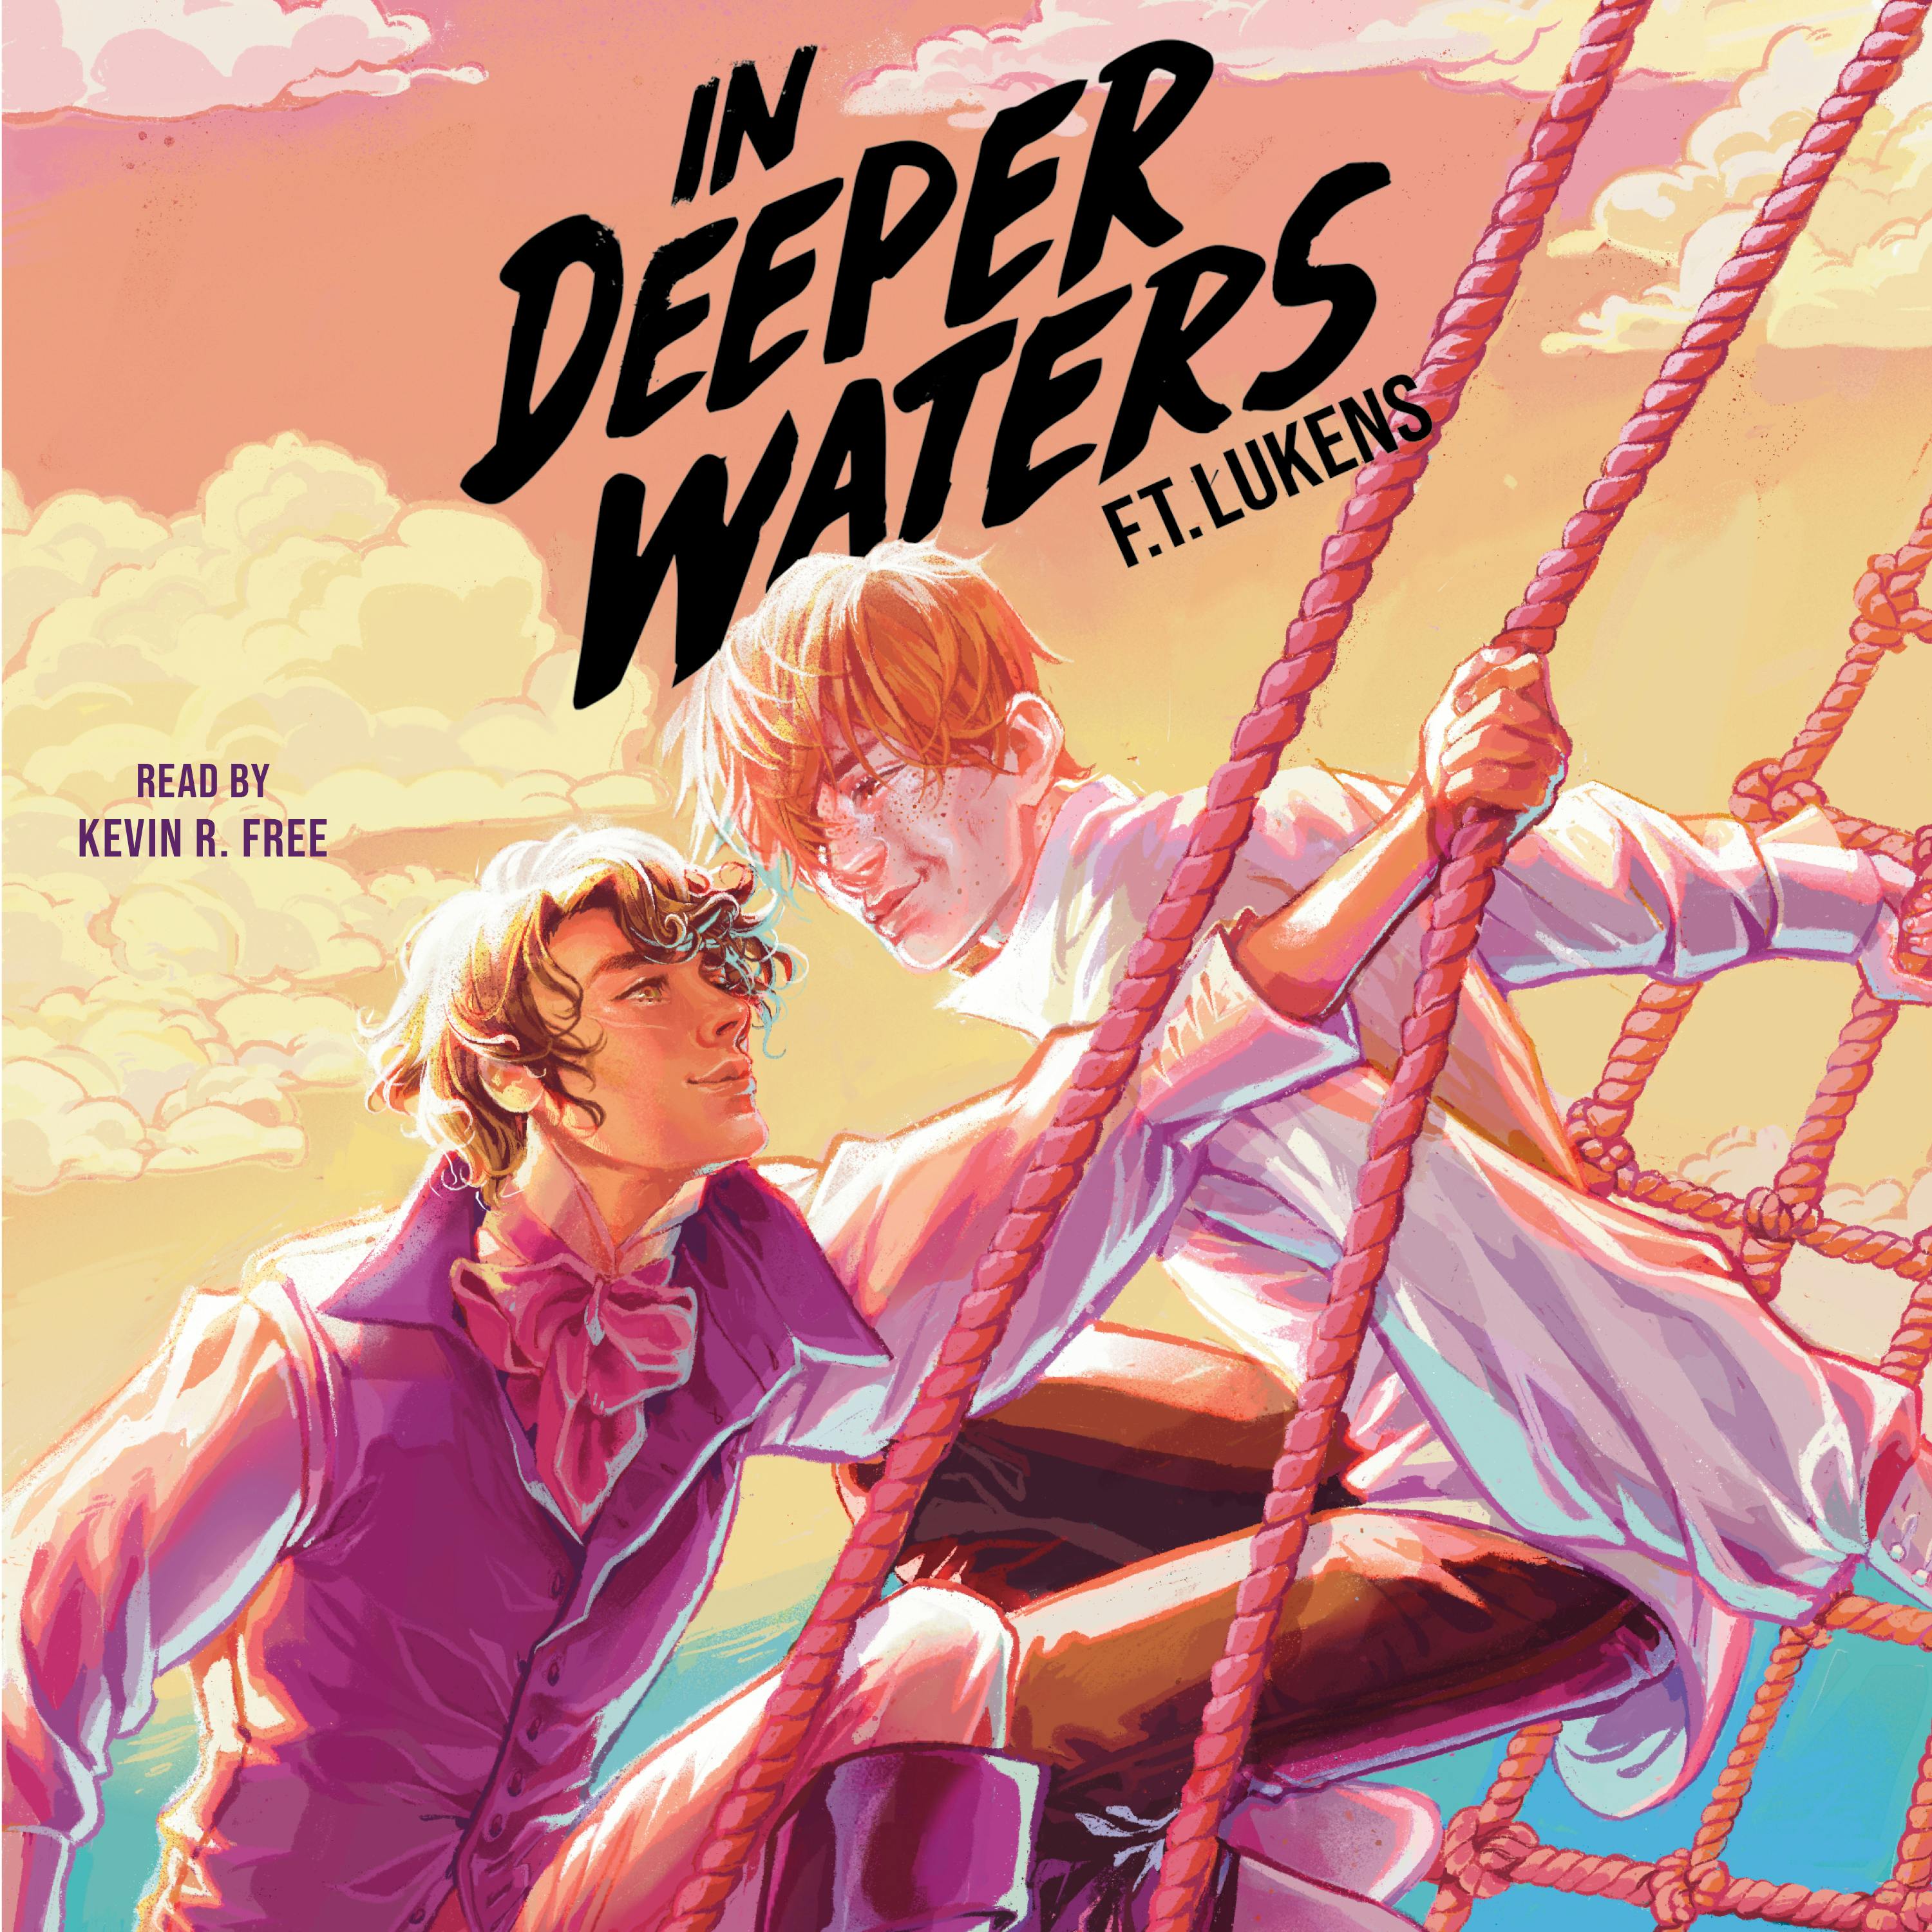 In Deeper Waters - F.T. Lukens